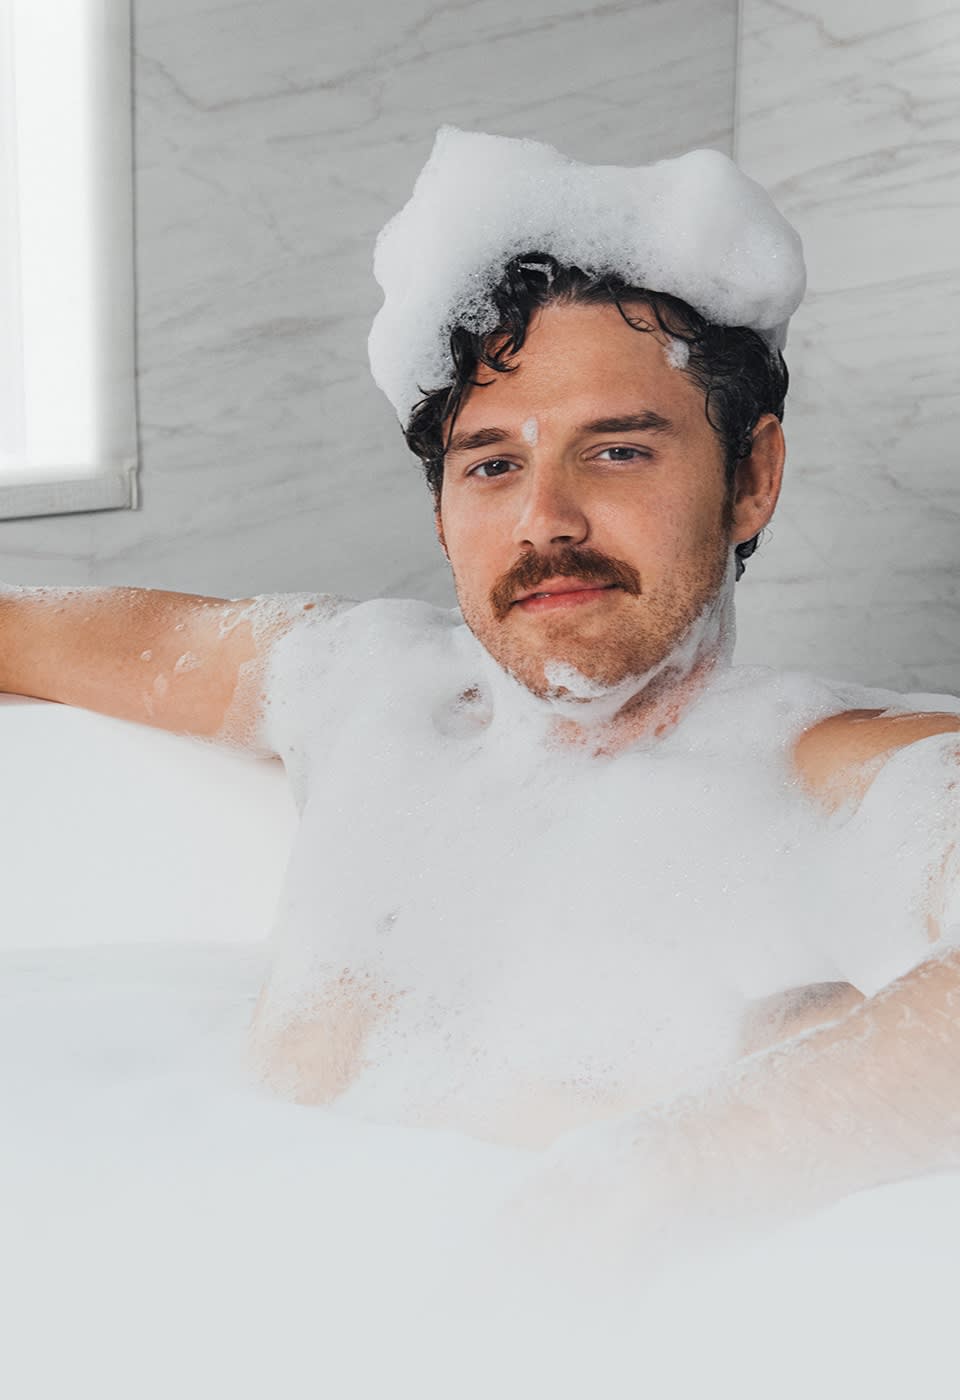 Männliches Model in der Badewanne mit Schaum bedeckt